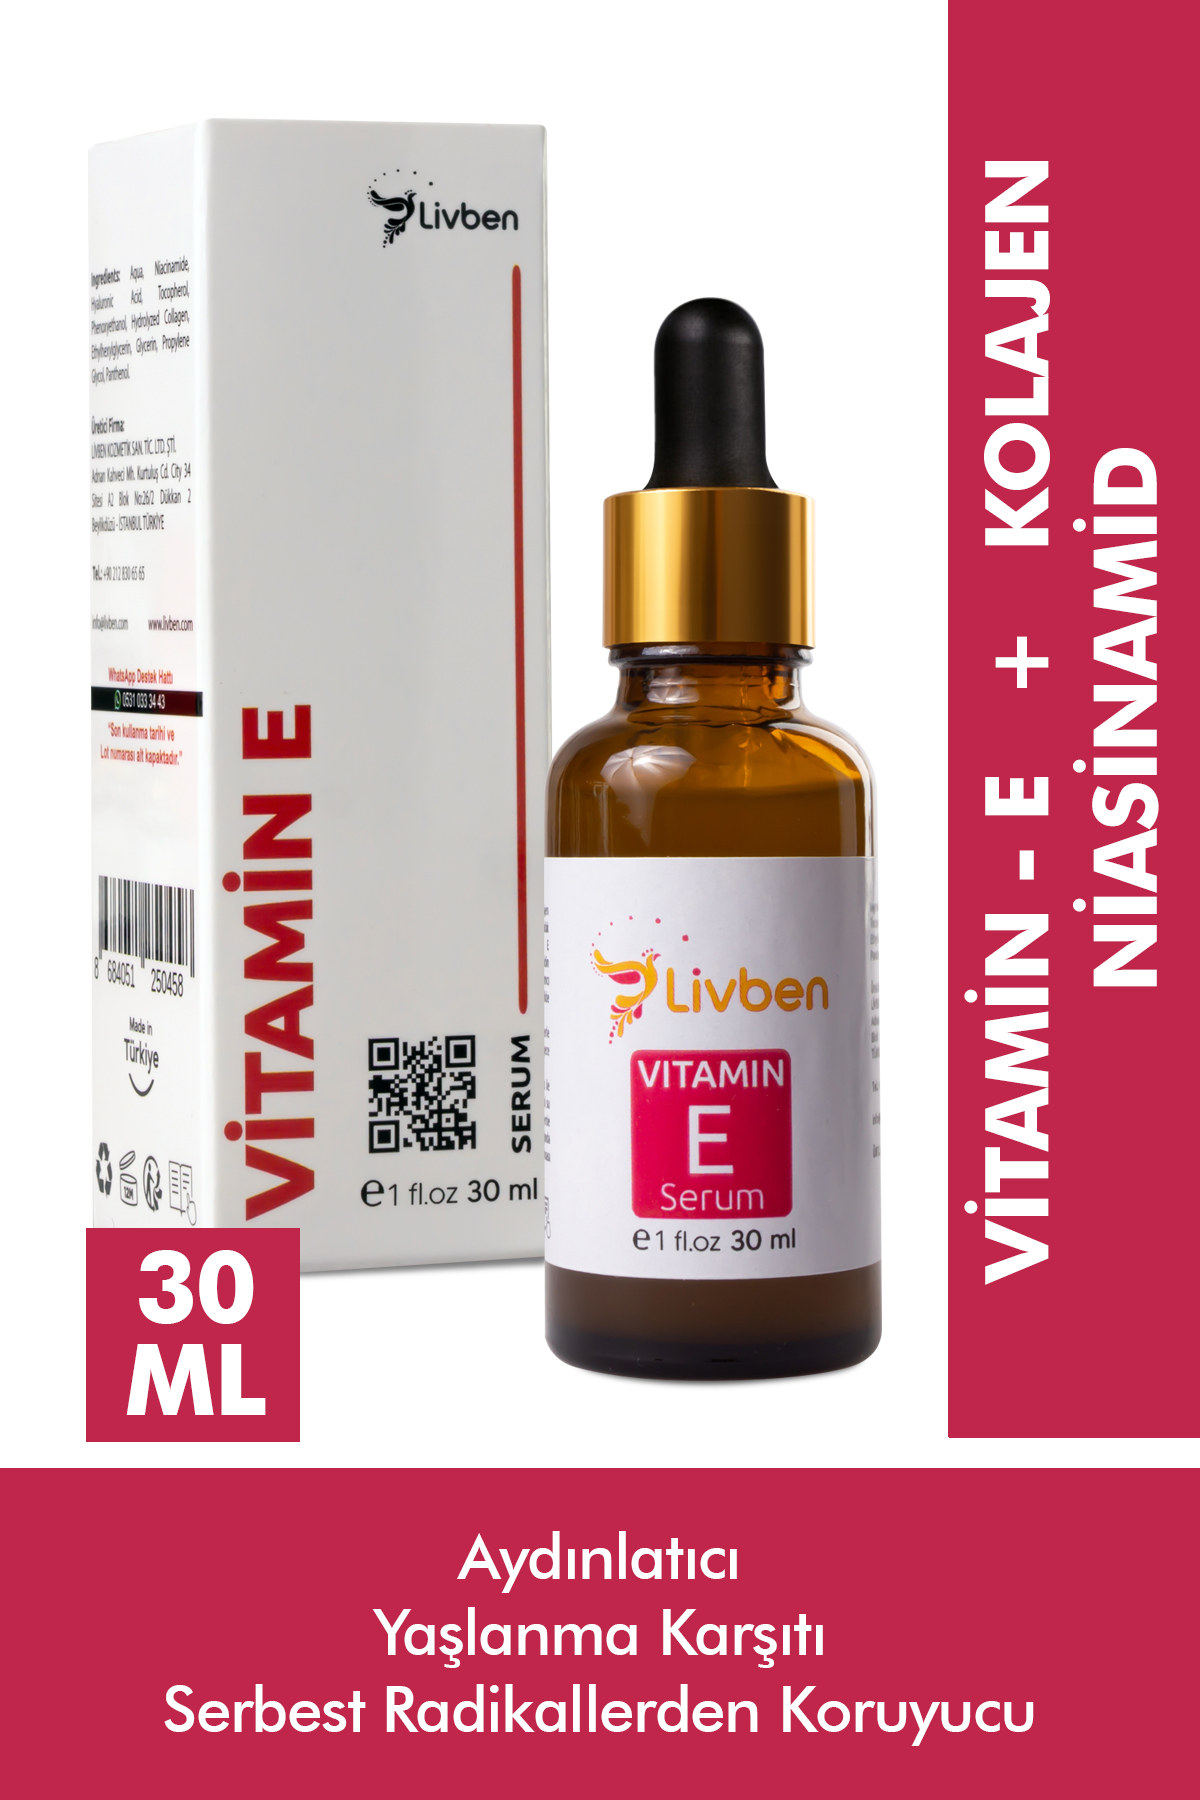 Livben ® Temizleyici Nemlendirici Köpük 200 ml ve Kırışıklık Giderici Vitamin E Serum 30 ml